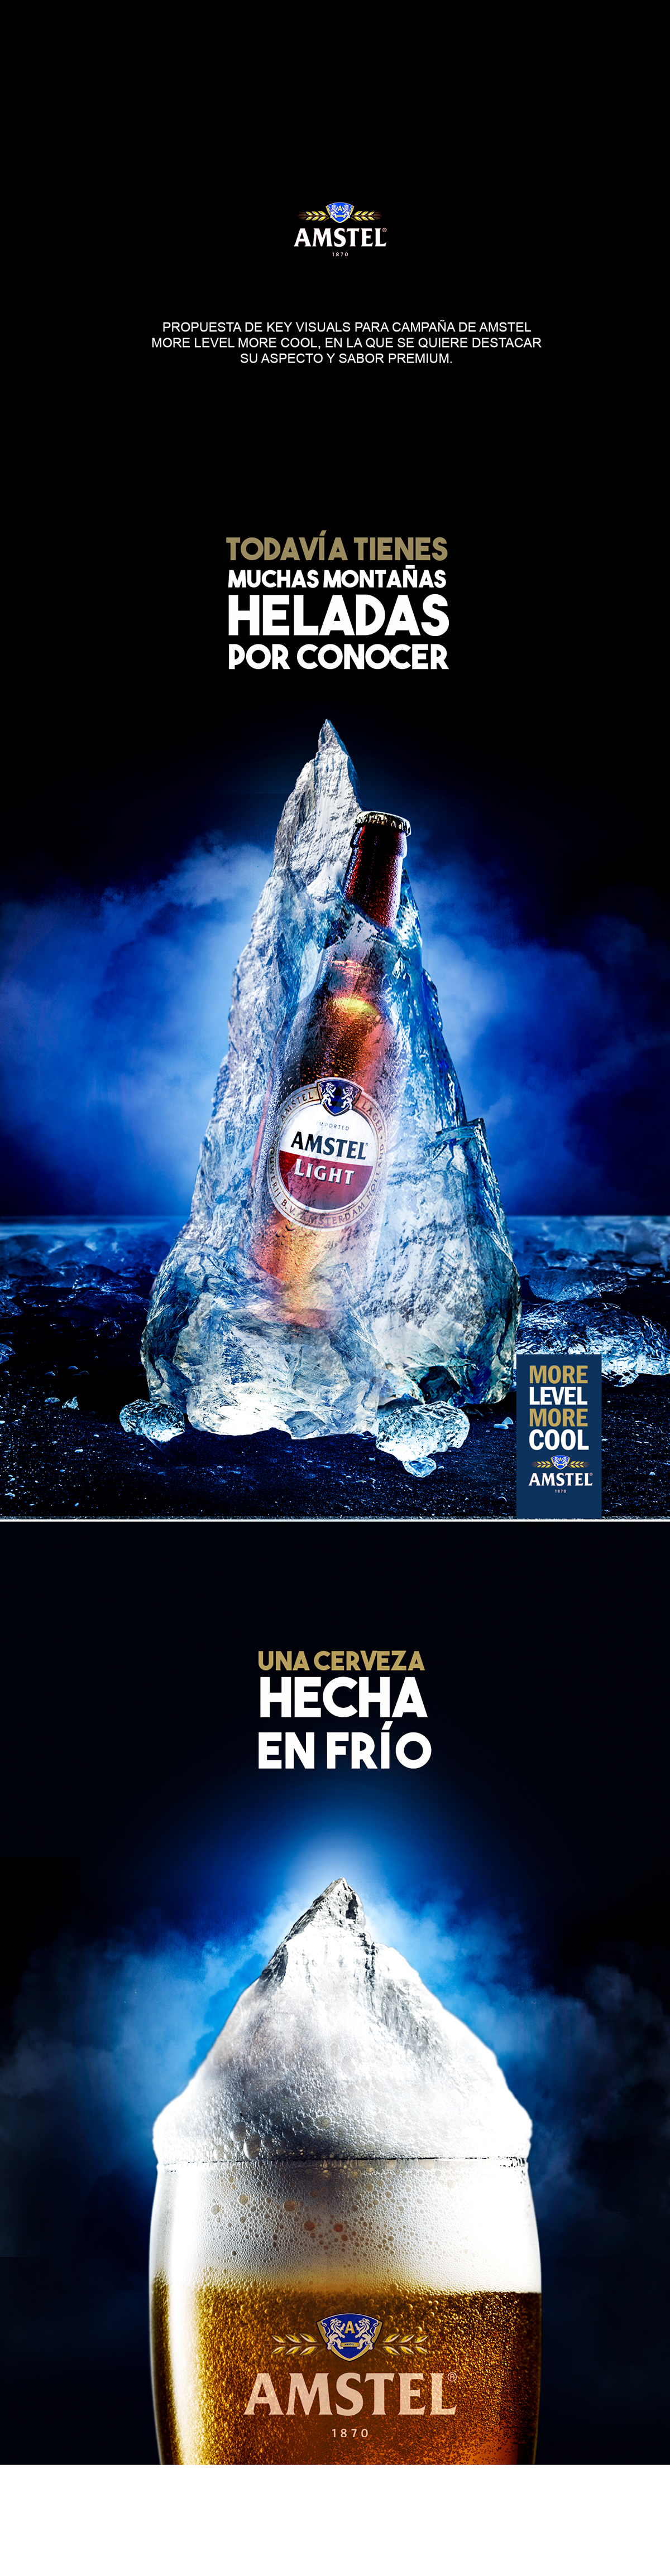 beer branding  campaign Amstel cerveza cool